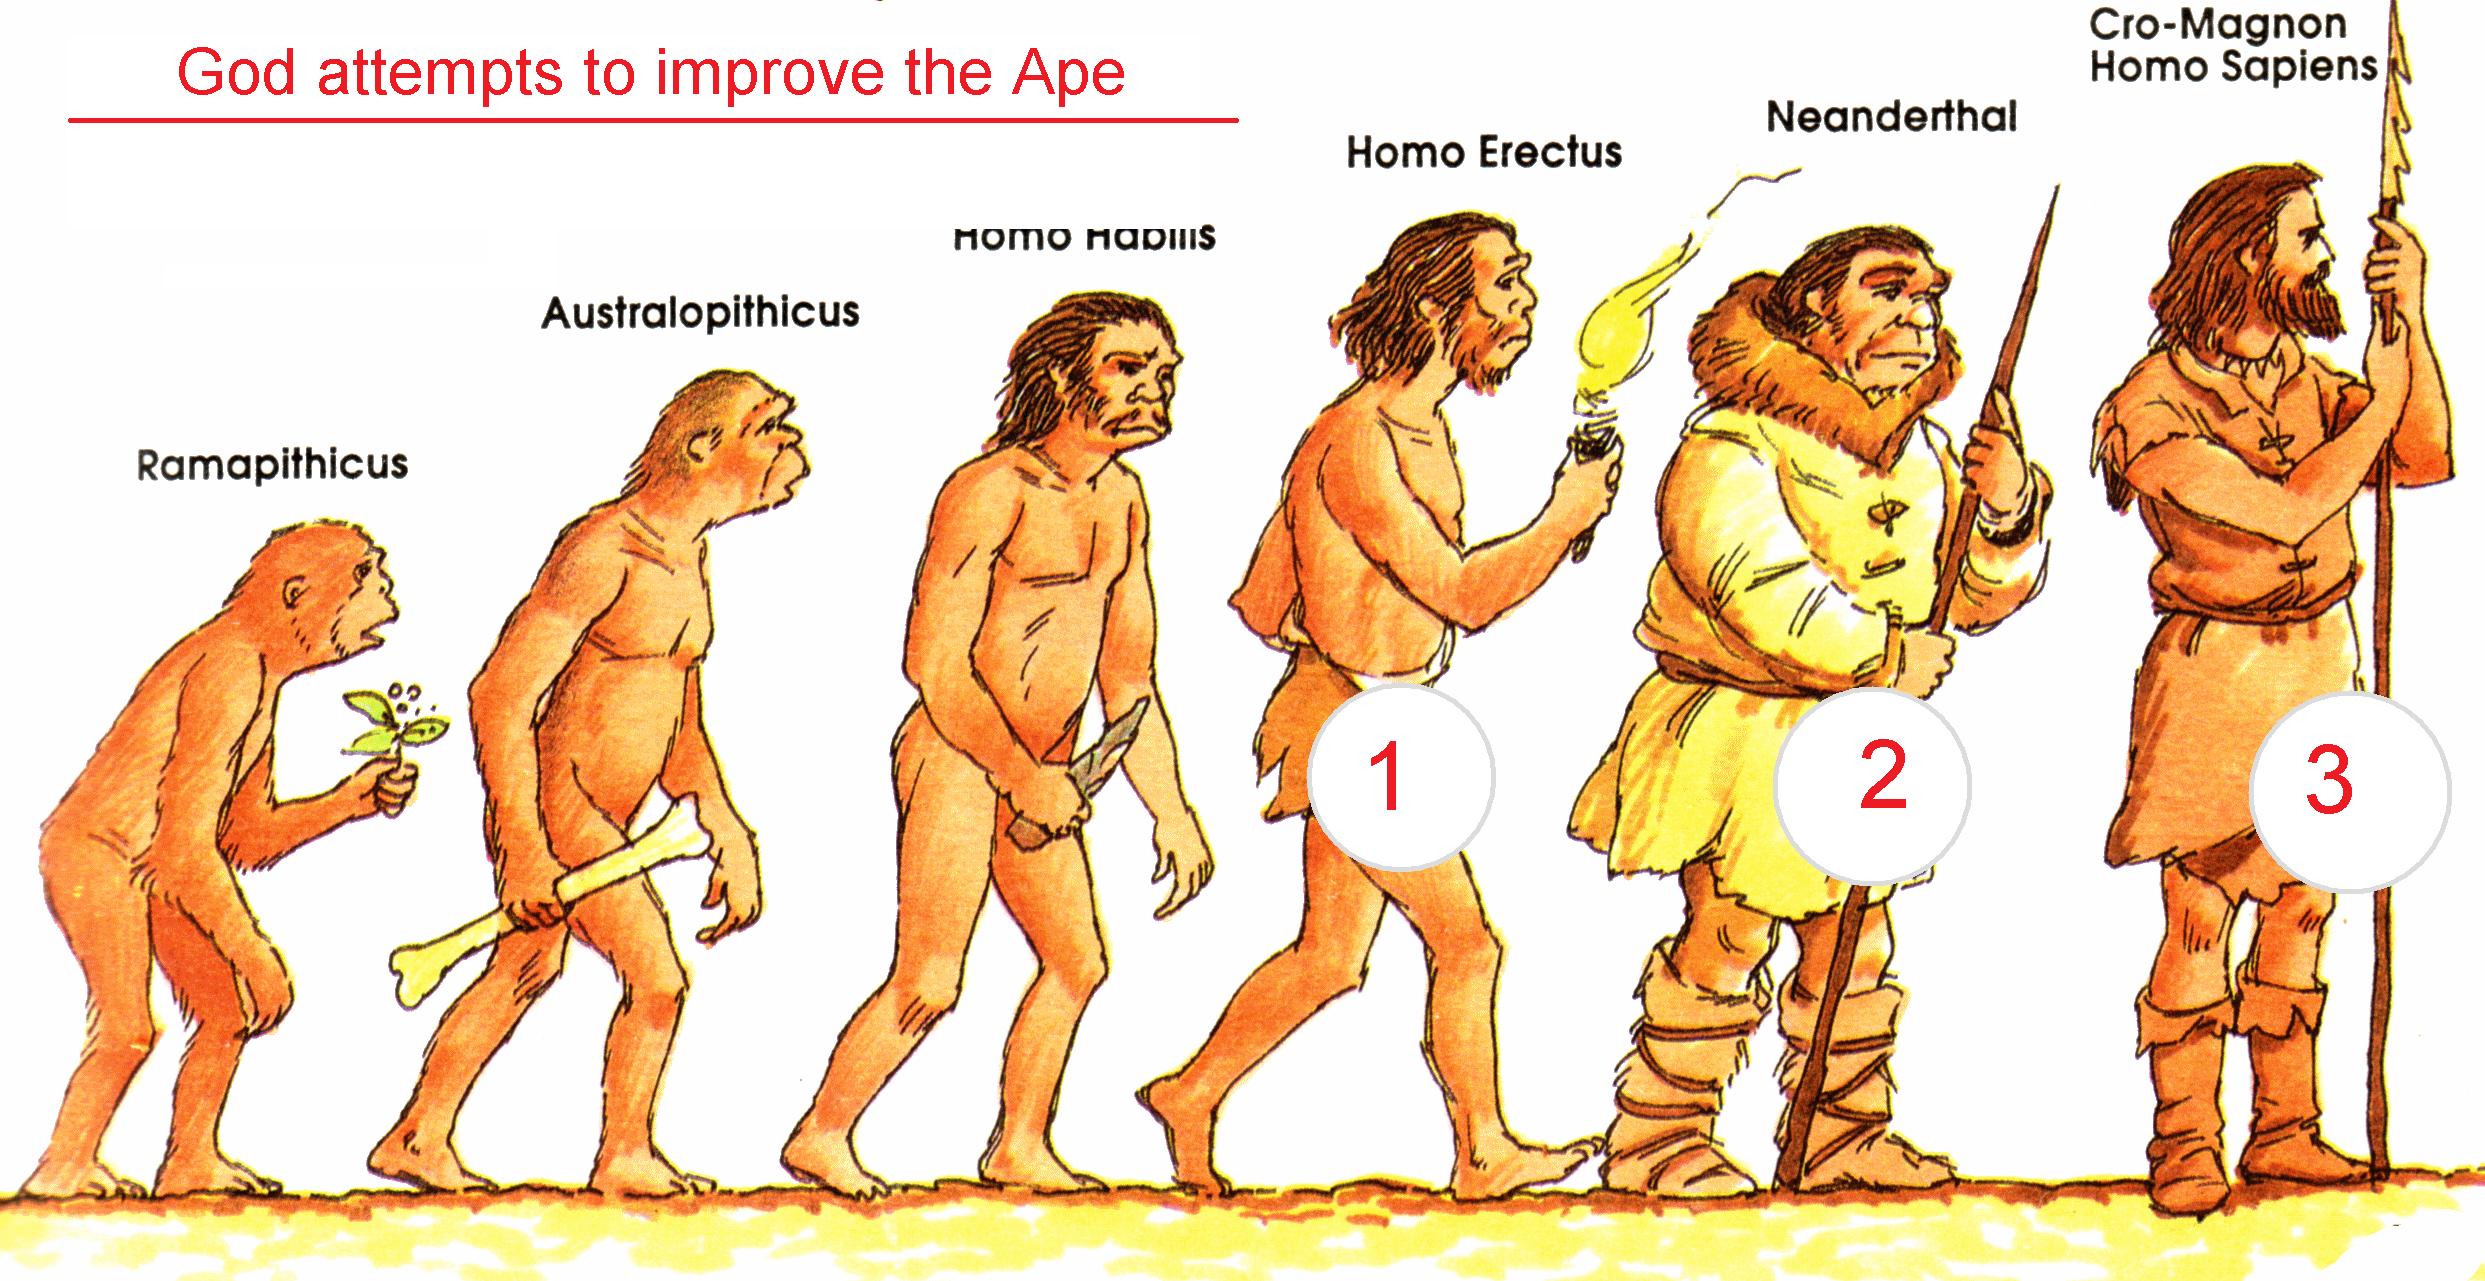 Научное название человека. Эволюция человека хомо сапиенс. Человек разумный разумный homo sapiens sapiens. Эволюция человека неандерталец кроманьонец. Хомо сапиенс неандерталец кроманьонец.